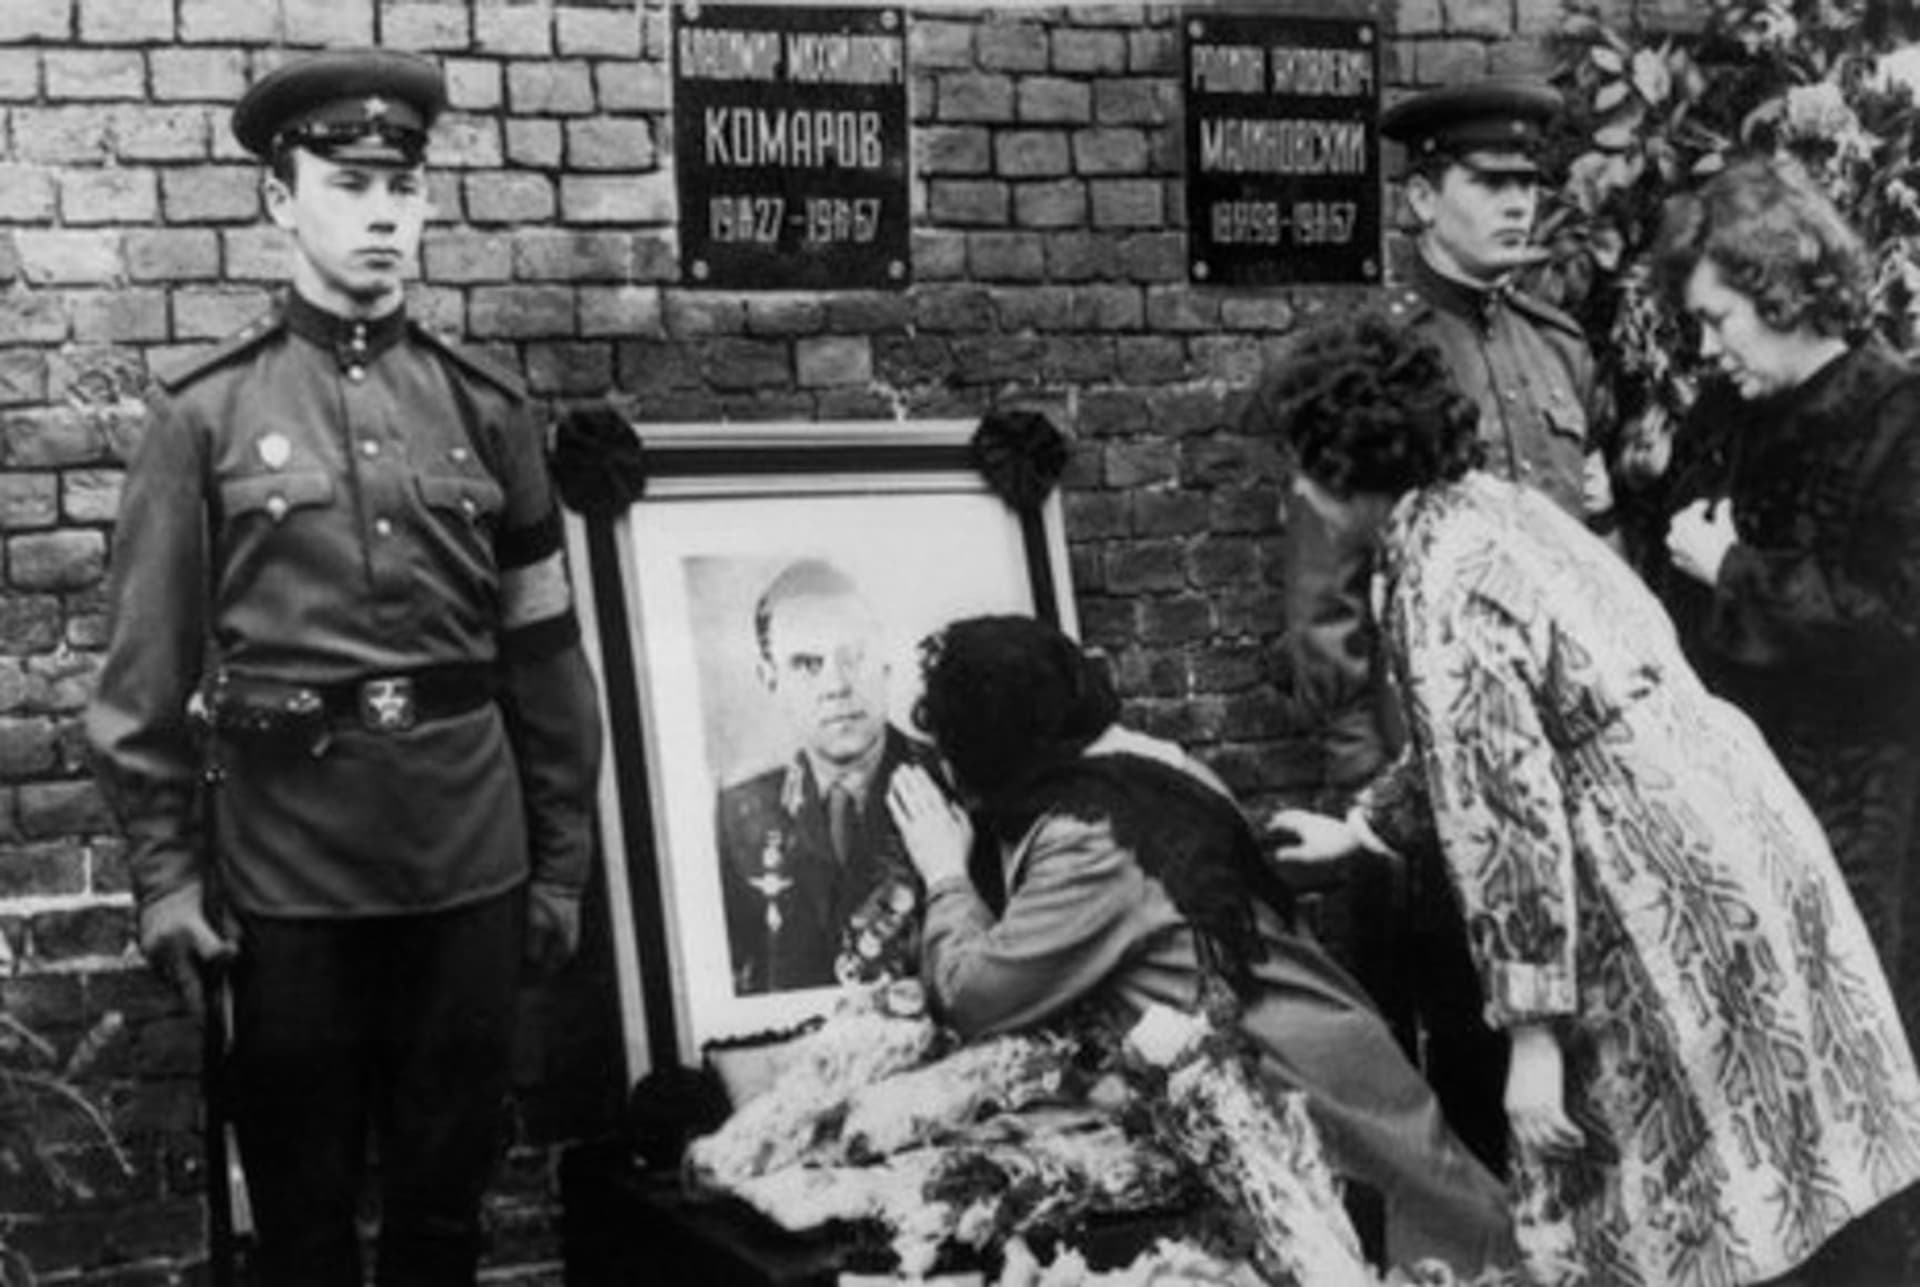 Pohřeb Vladimira Komarova